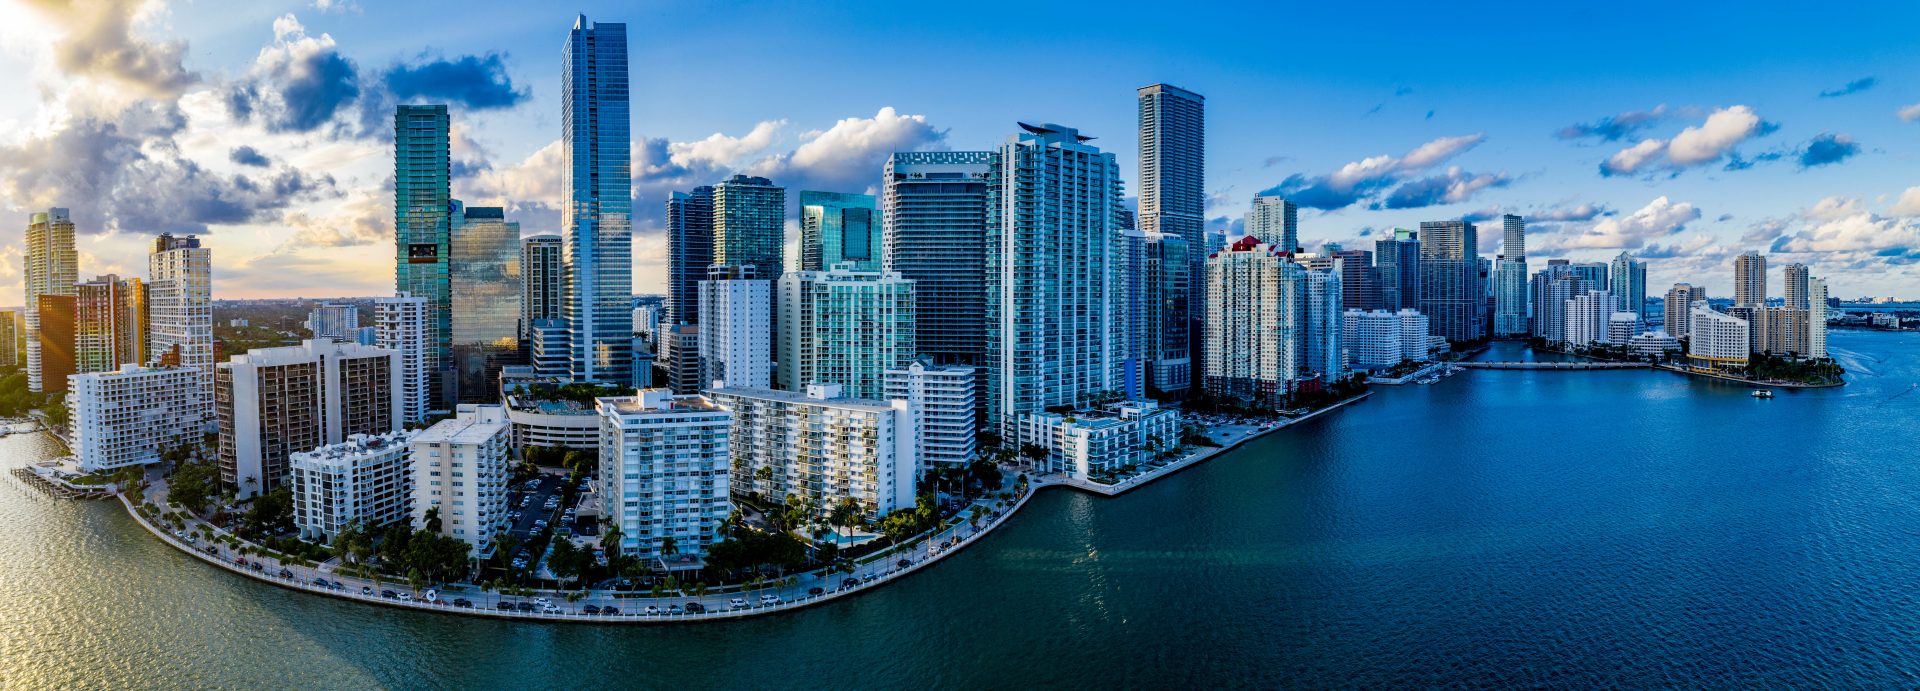 Miami FL skyline